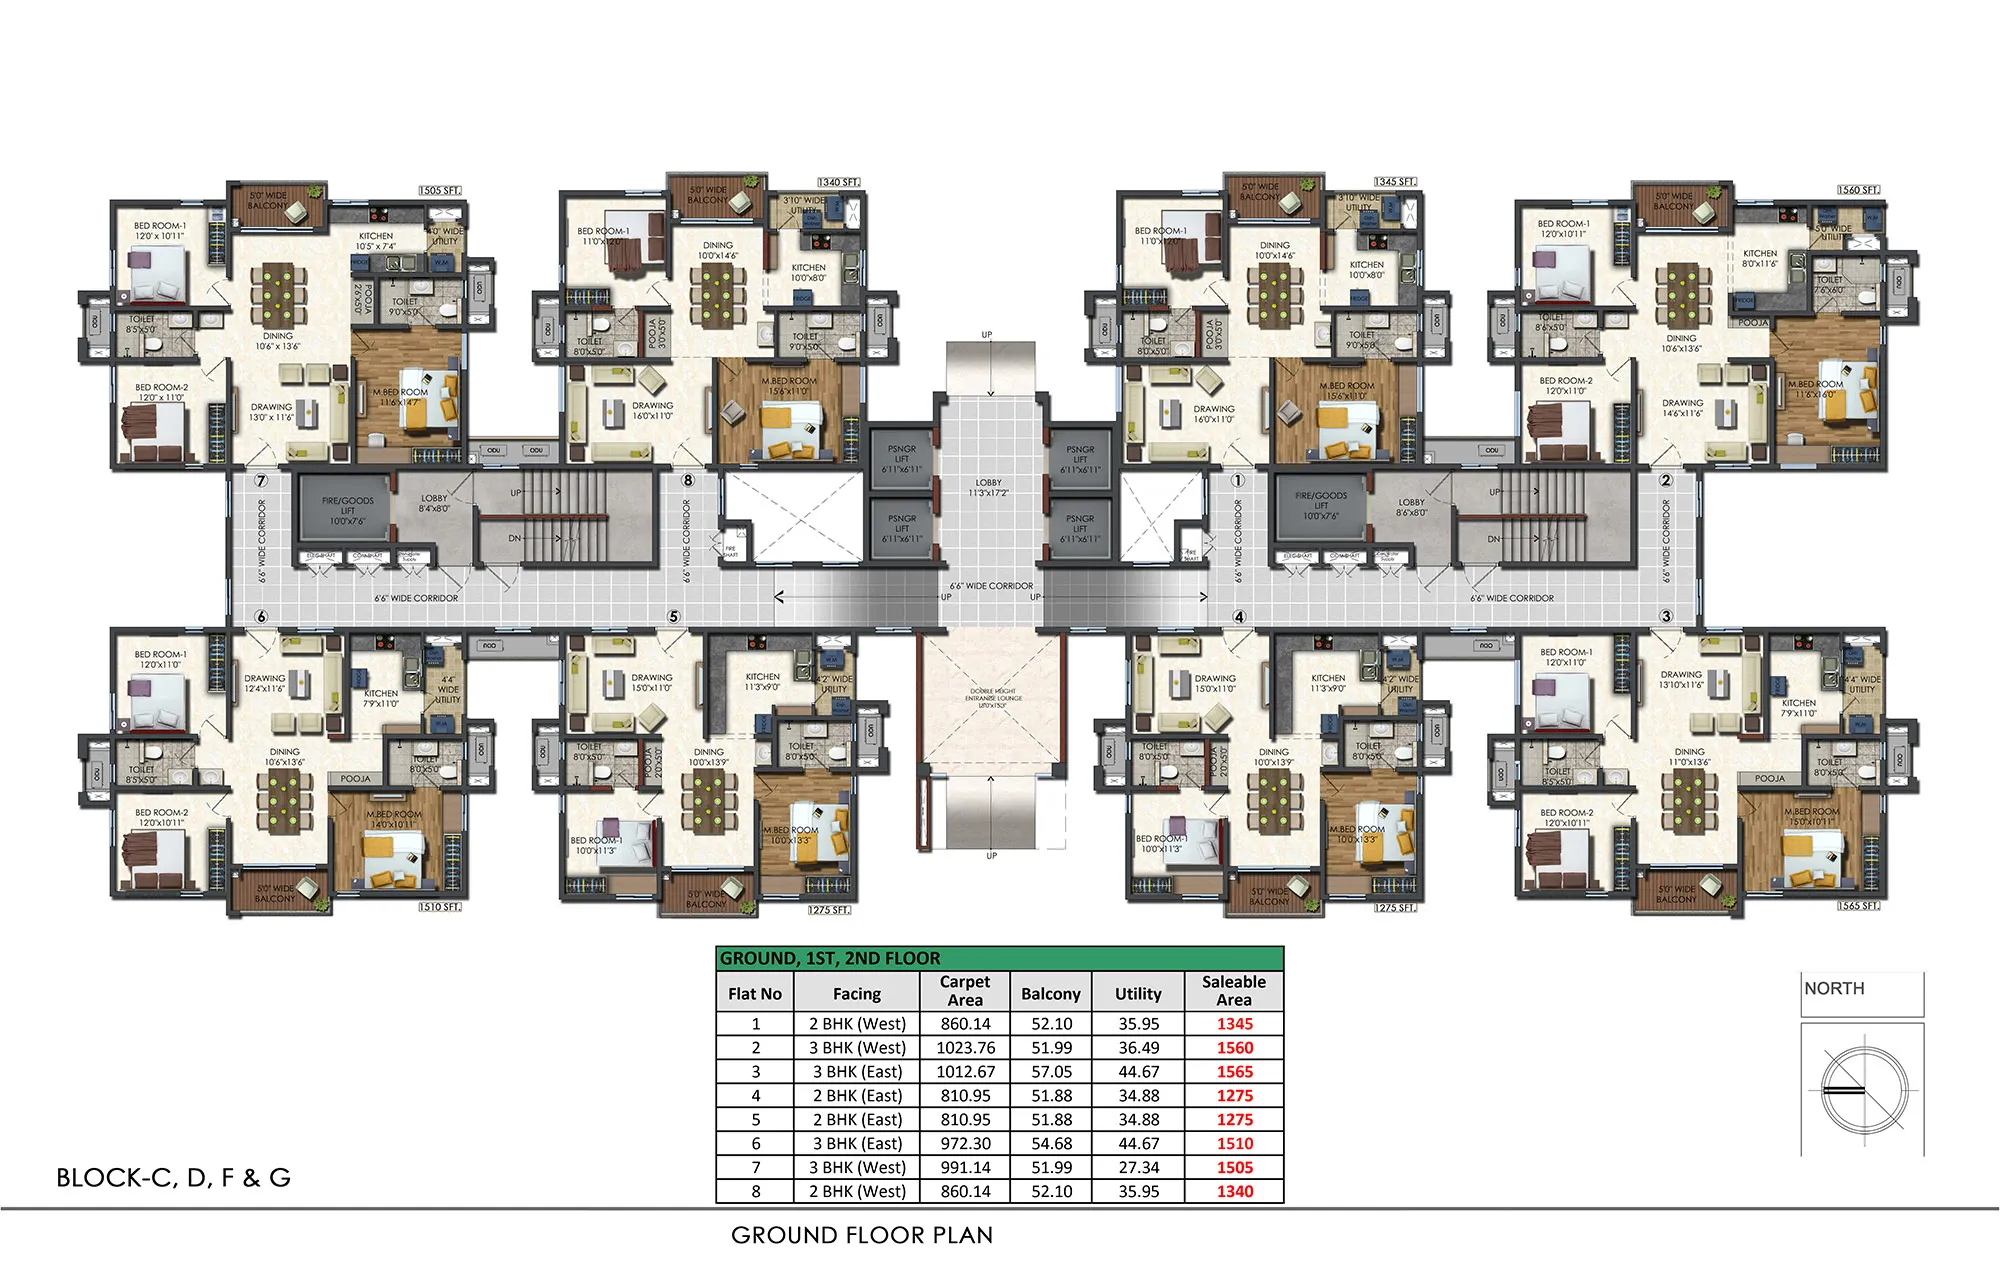 Ground-floor-plan-8